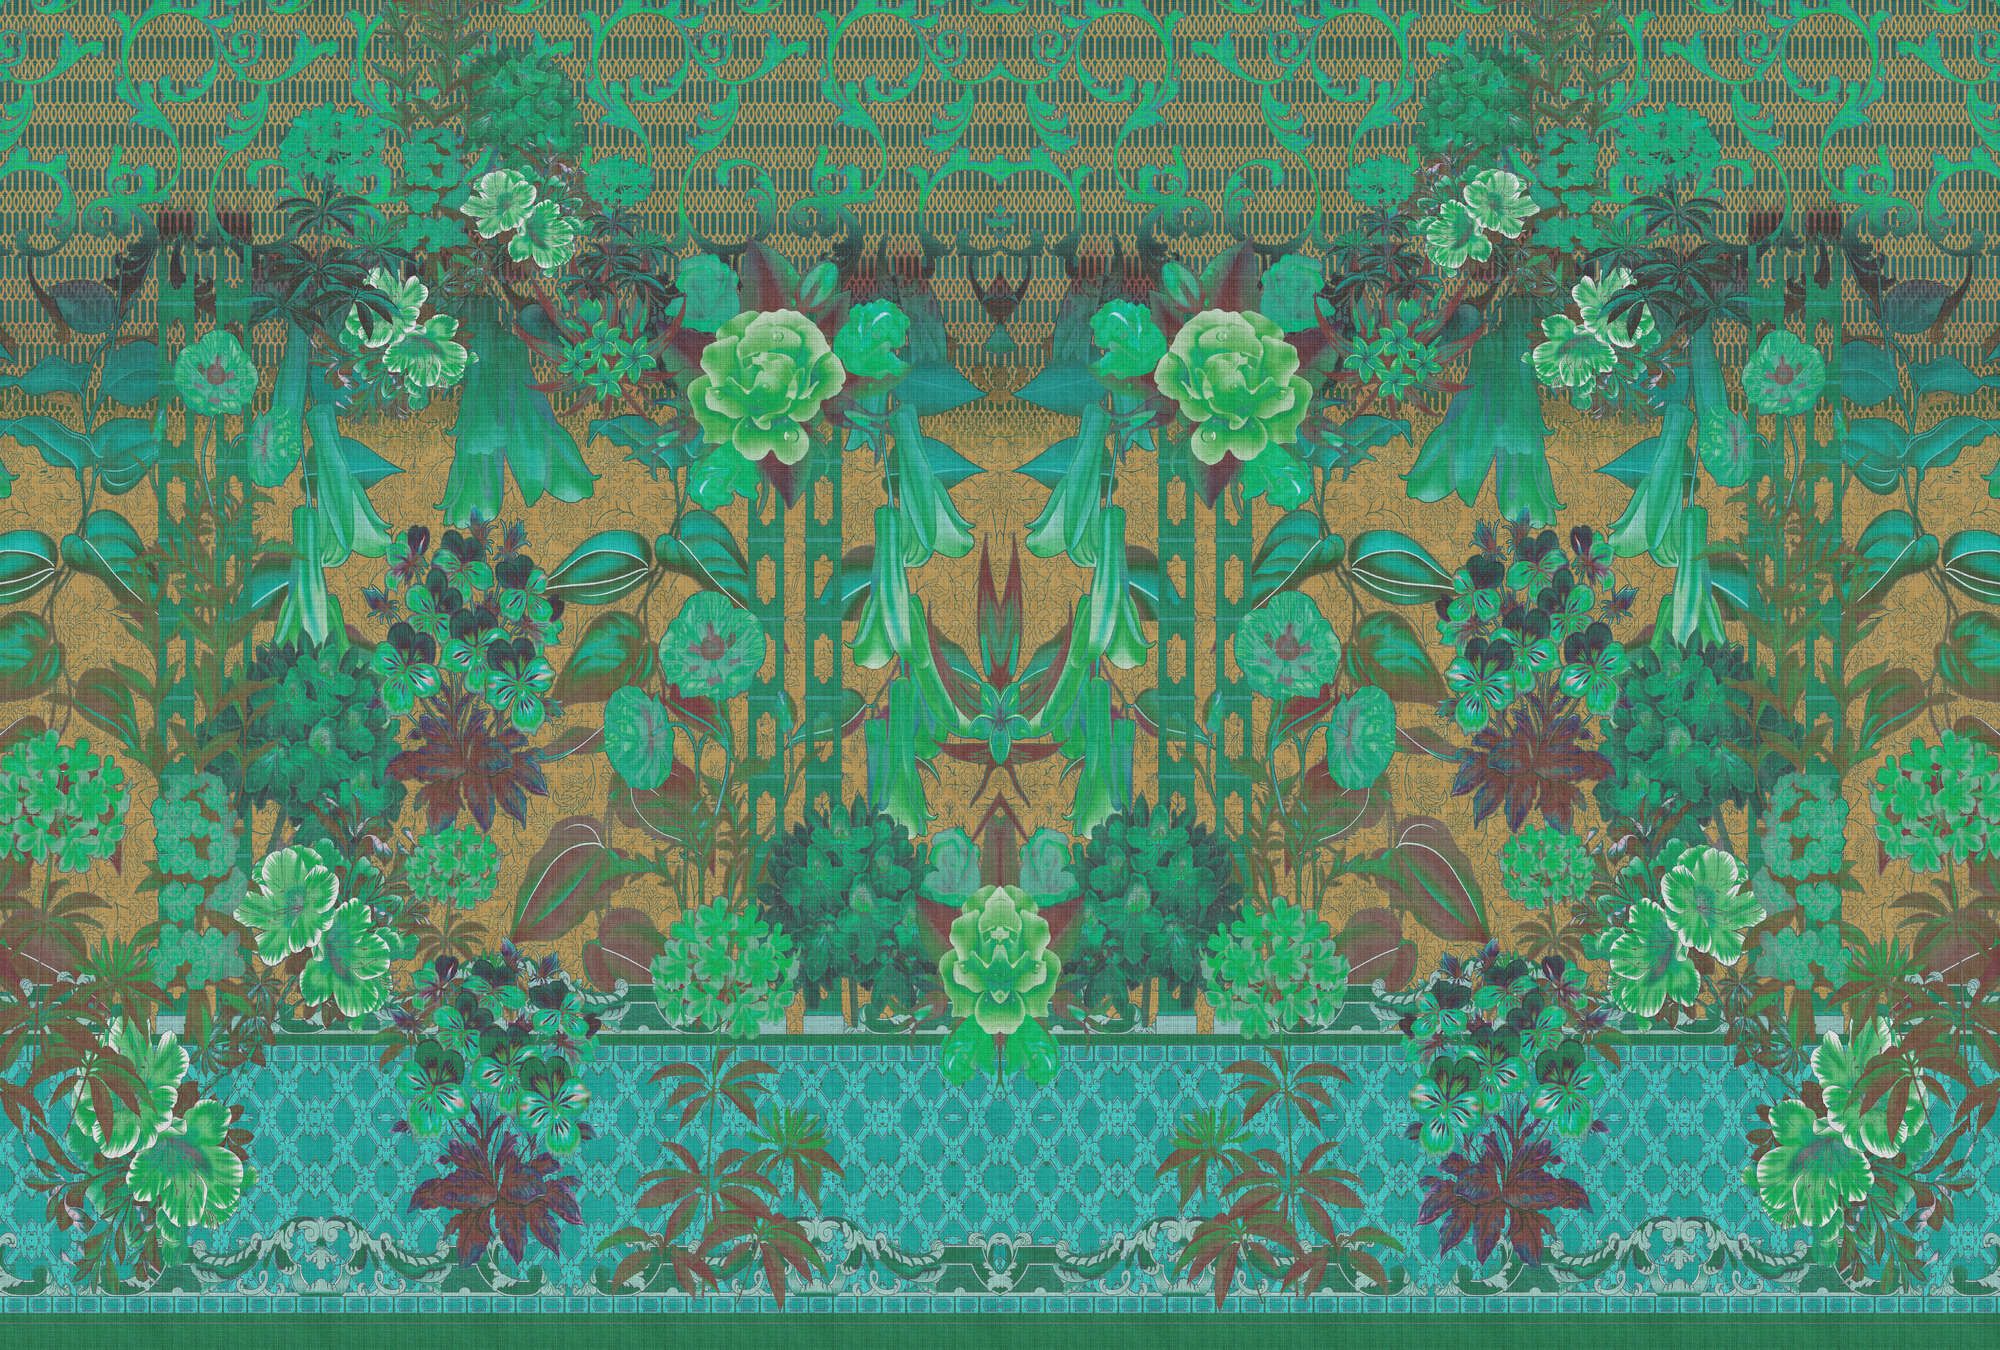             Fotomural »sati 2« - Diseño floral y ornamentos con aspecto de estructura de lino - Verde | Tela no tejida de alta calidad, lisa y ligeramente brillante
        